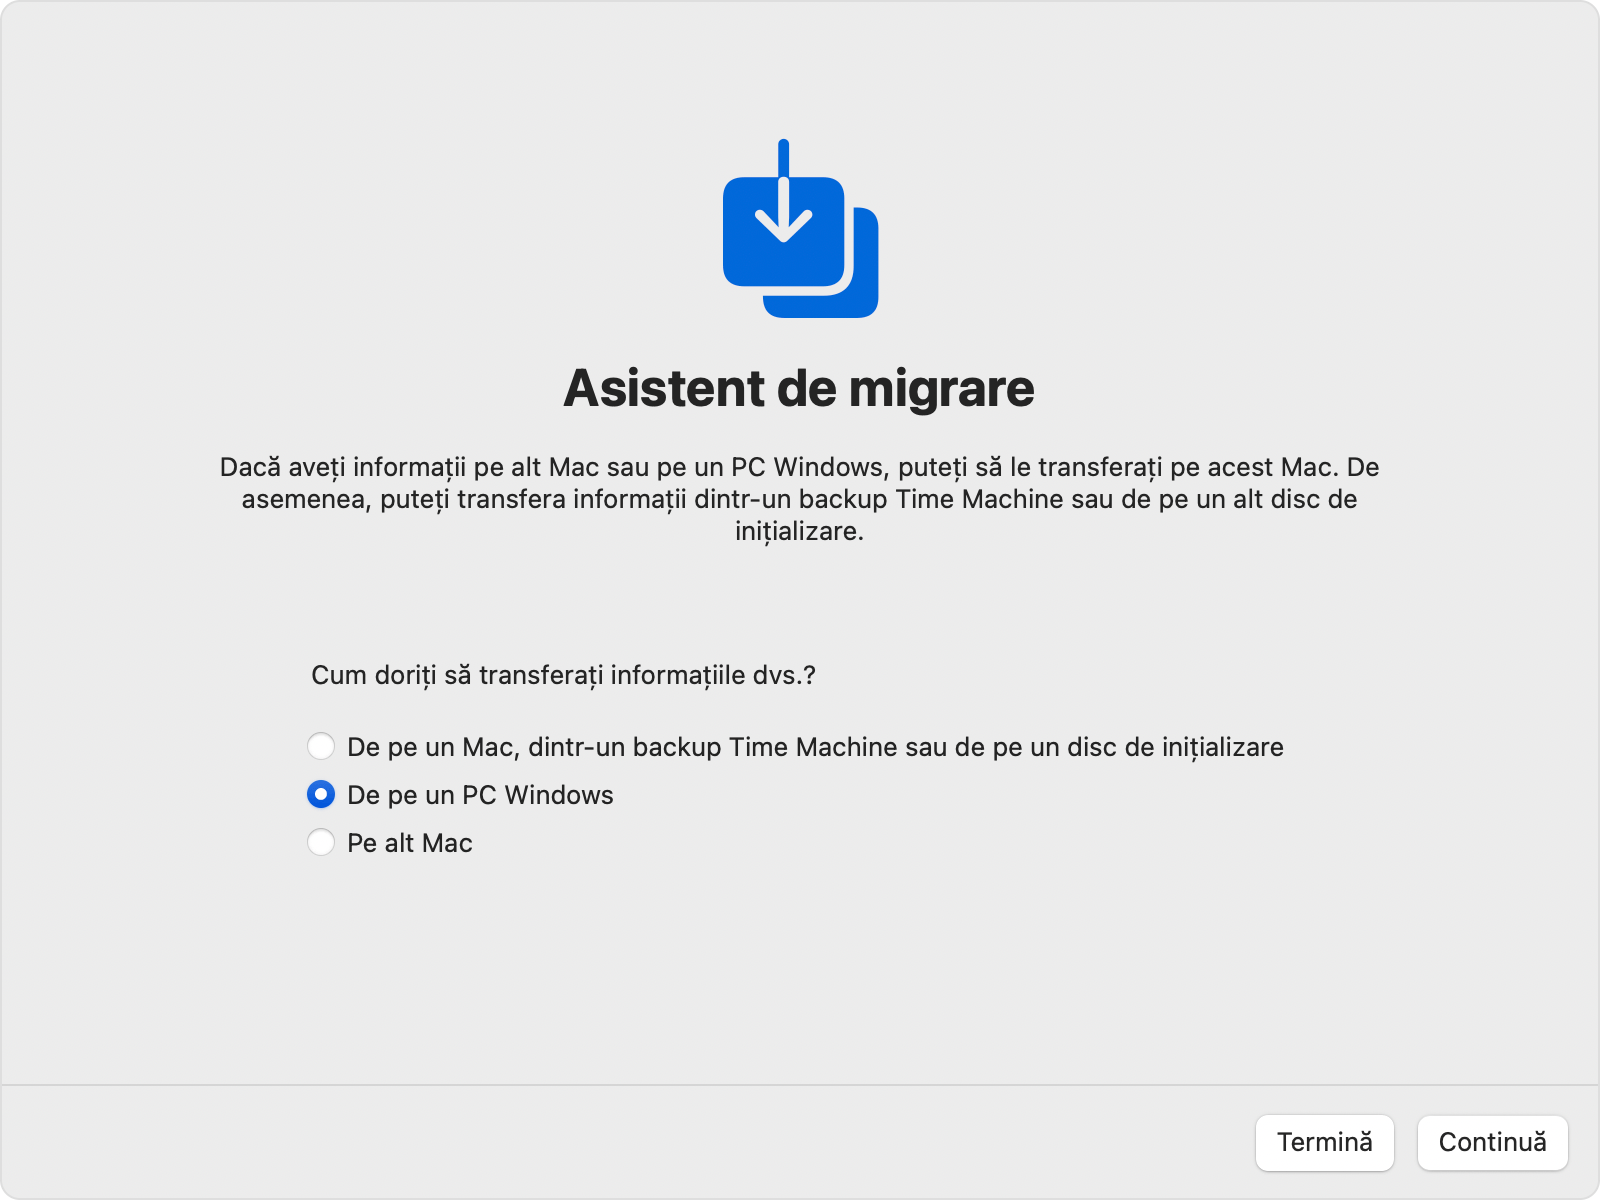 Asistent de migrare pe Mac: Transferă „De pe un PC Windows”